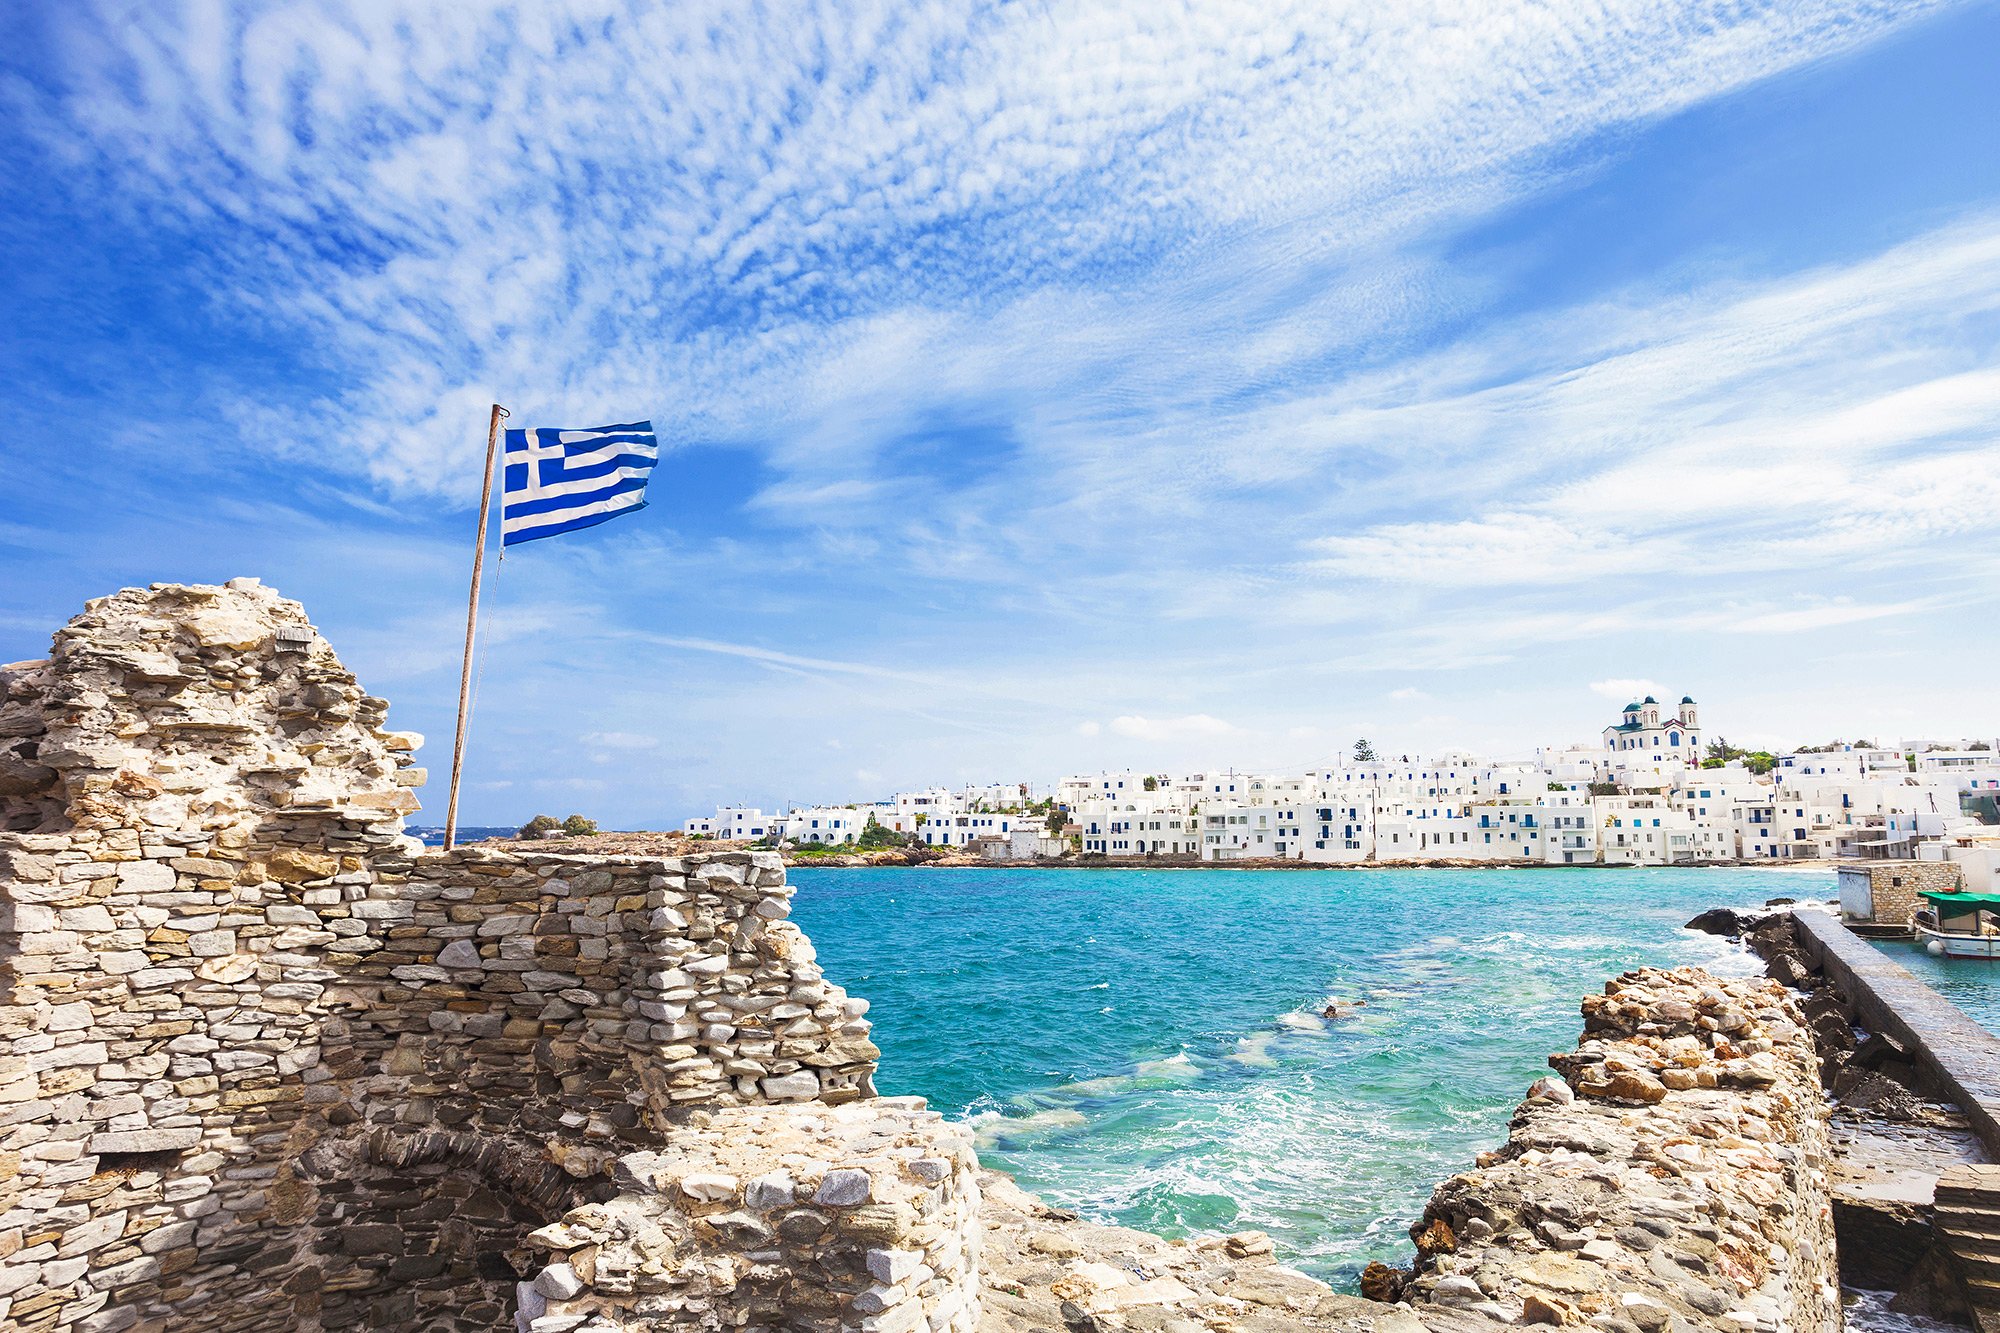 Հունաստանը խթանիչ պատվաստումների տևողությունը 6 ամսից կրճատել է 3 ամսի